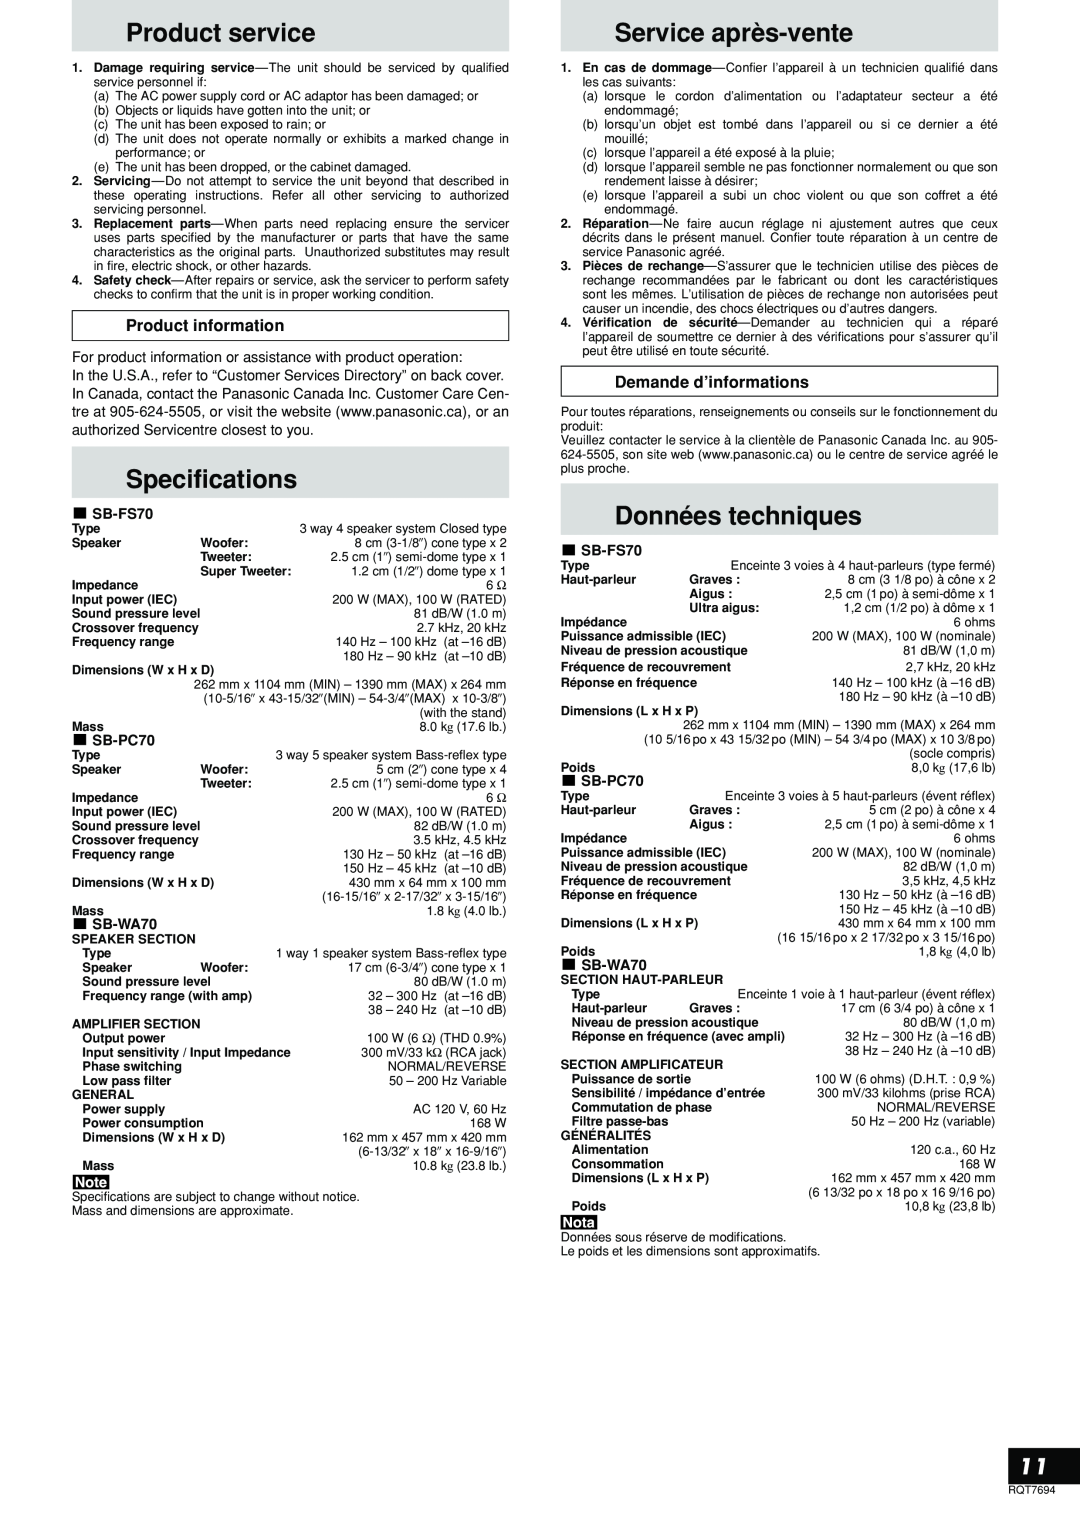 Panasonic SB-TP70 Product service, Specifications, Service après-vente, Données techniques, Product information 